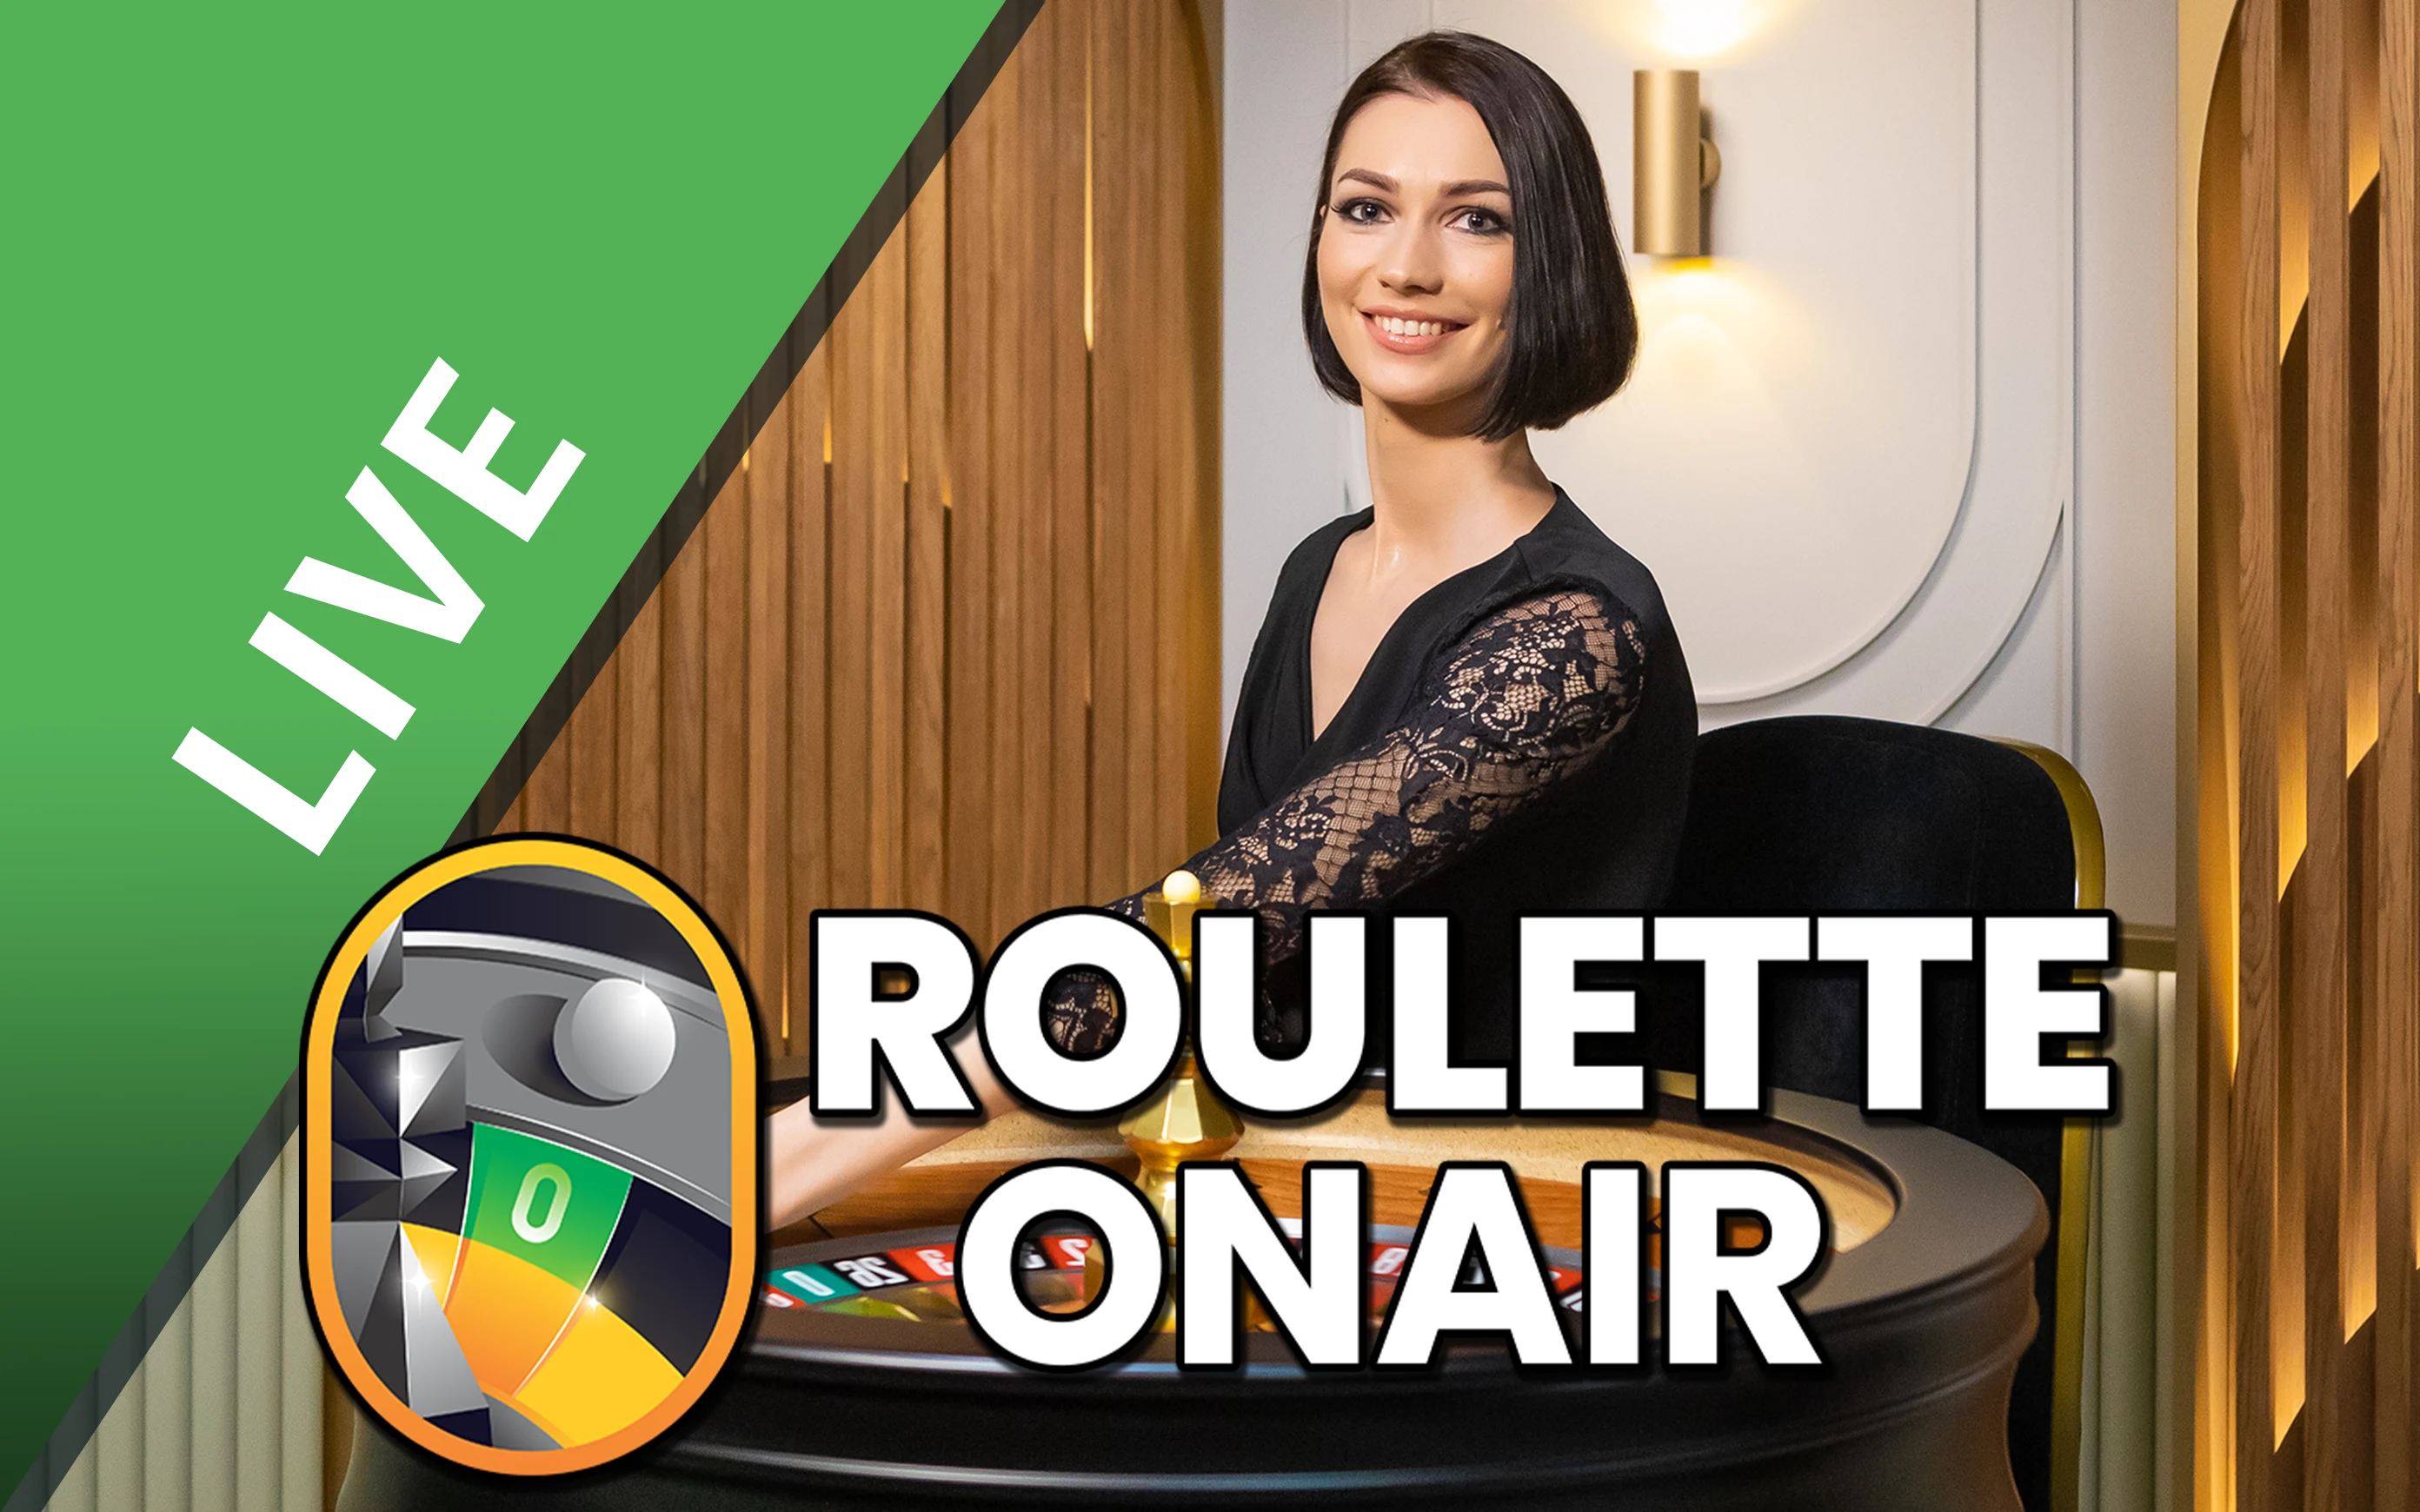 Starcasino.be online casino üzerinden Roulette OnAir oynayın